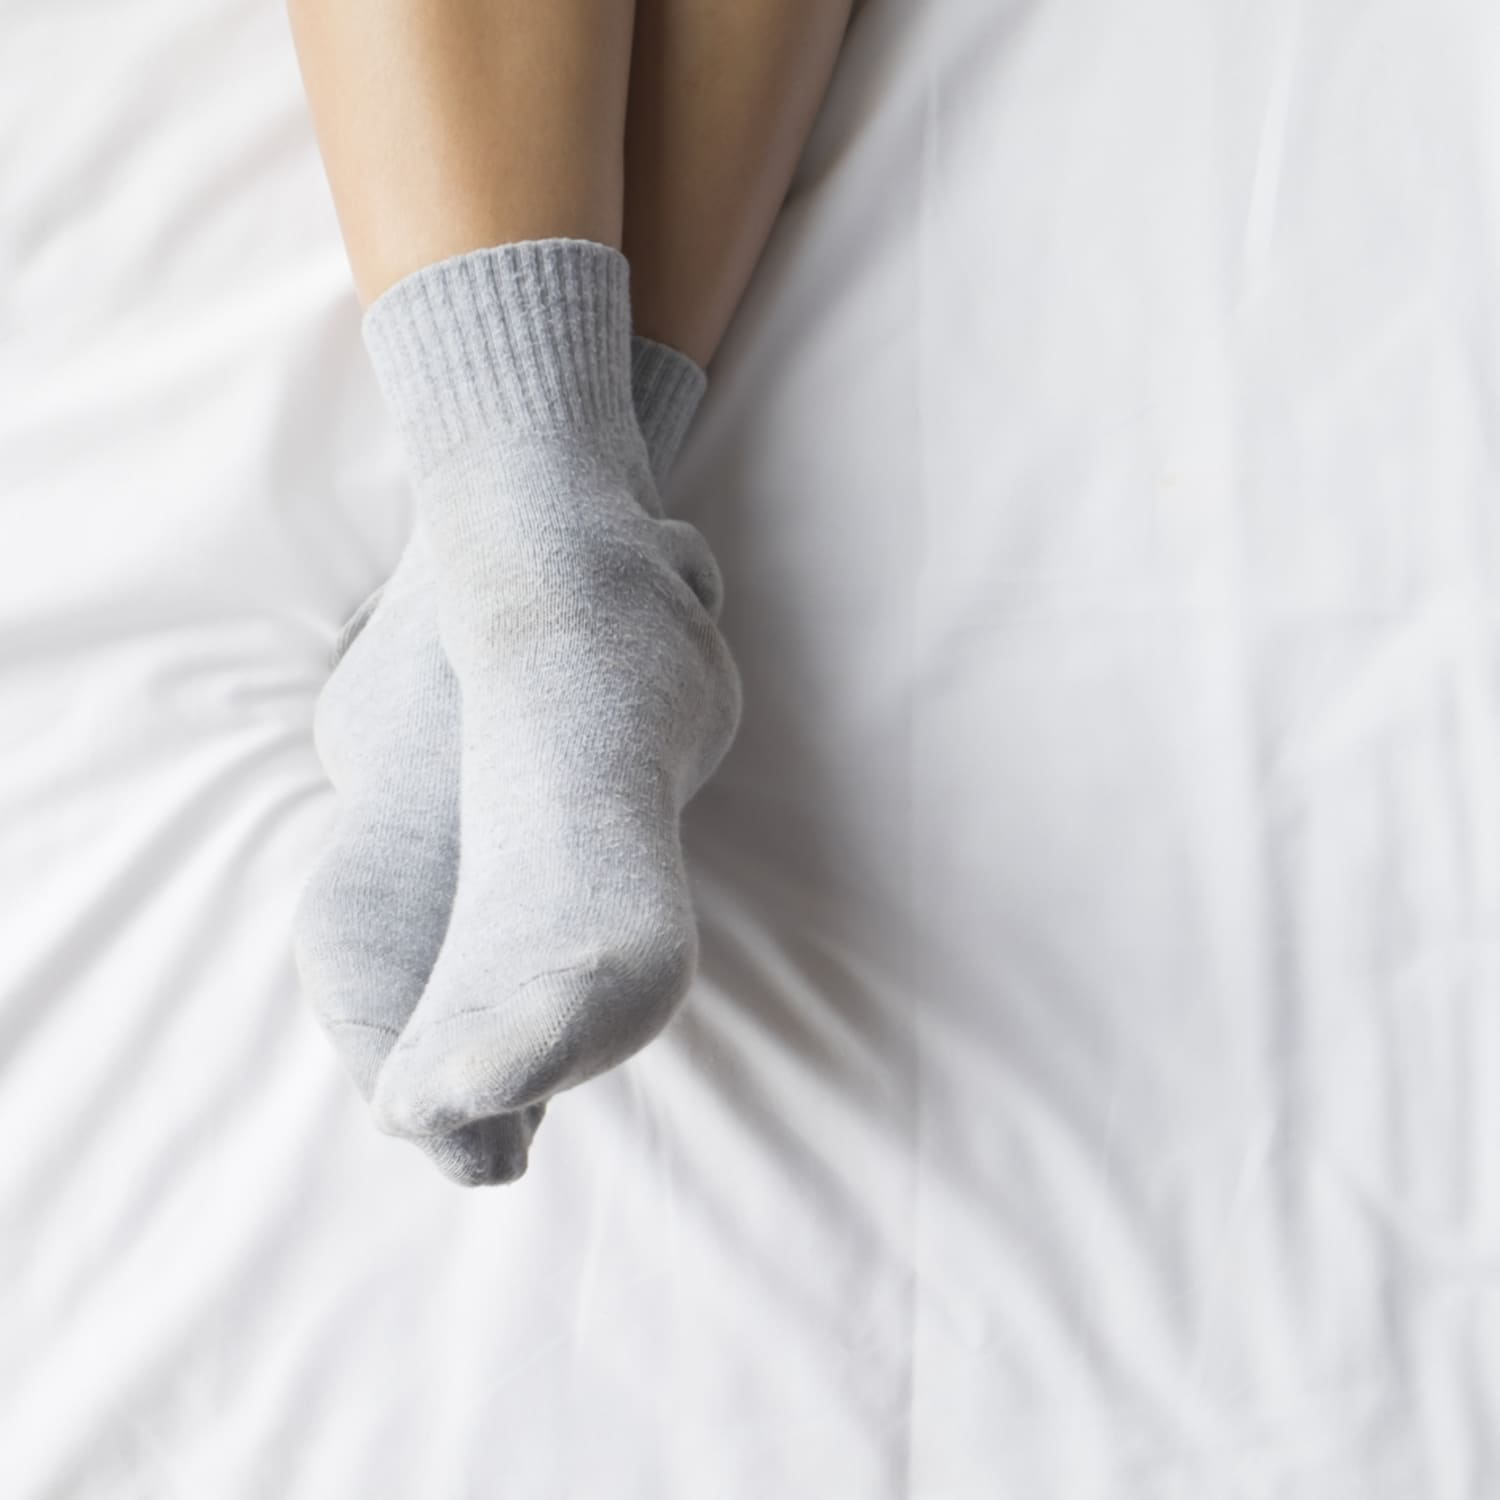 Fitness Wohnung Seite ˅ benefits of wearing socks to bed allgemein Jane ...